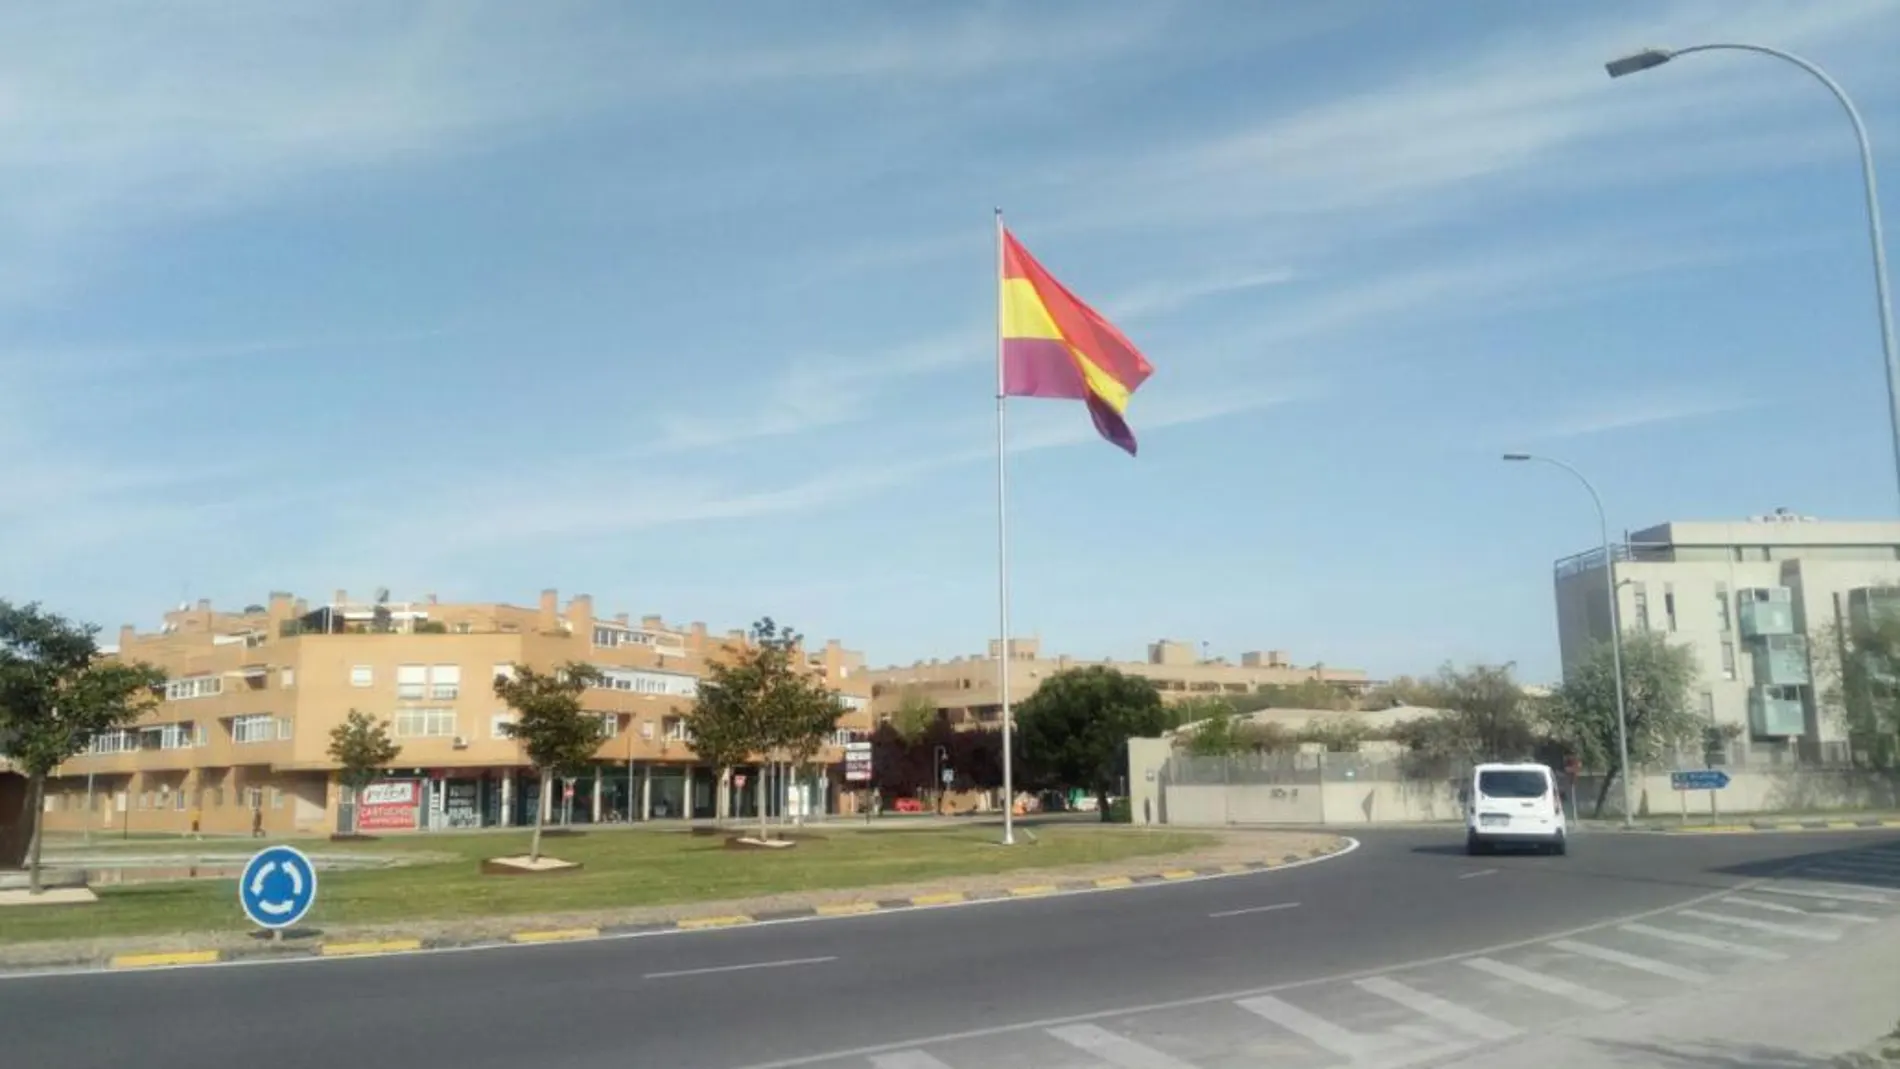 El Gobierno de Pinto sustituyó la bandera española por la republicana